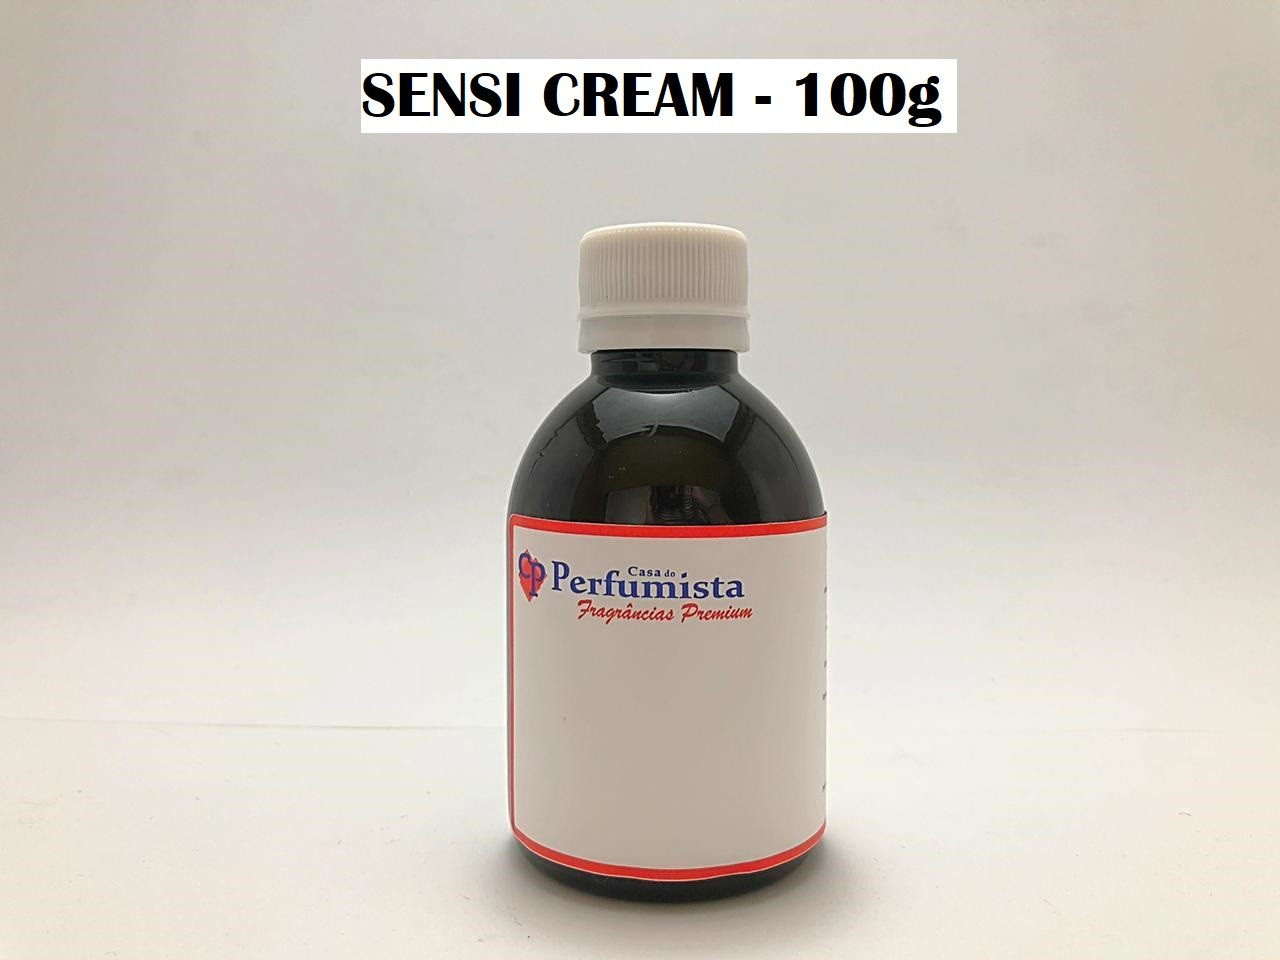 SENSI CREAM - 100g